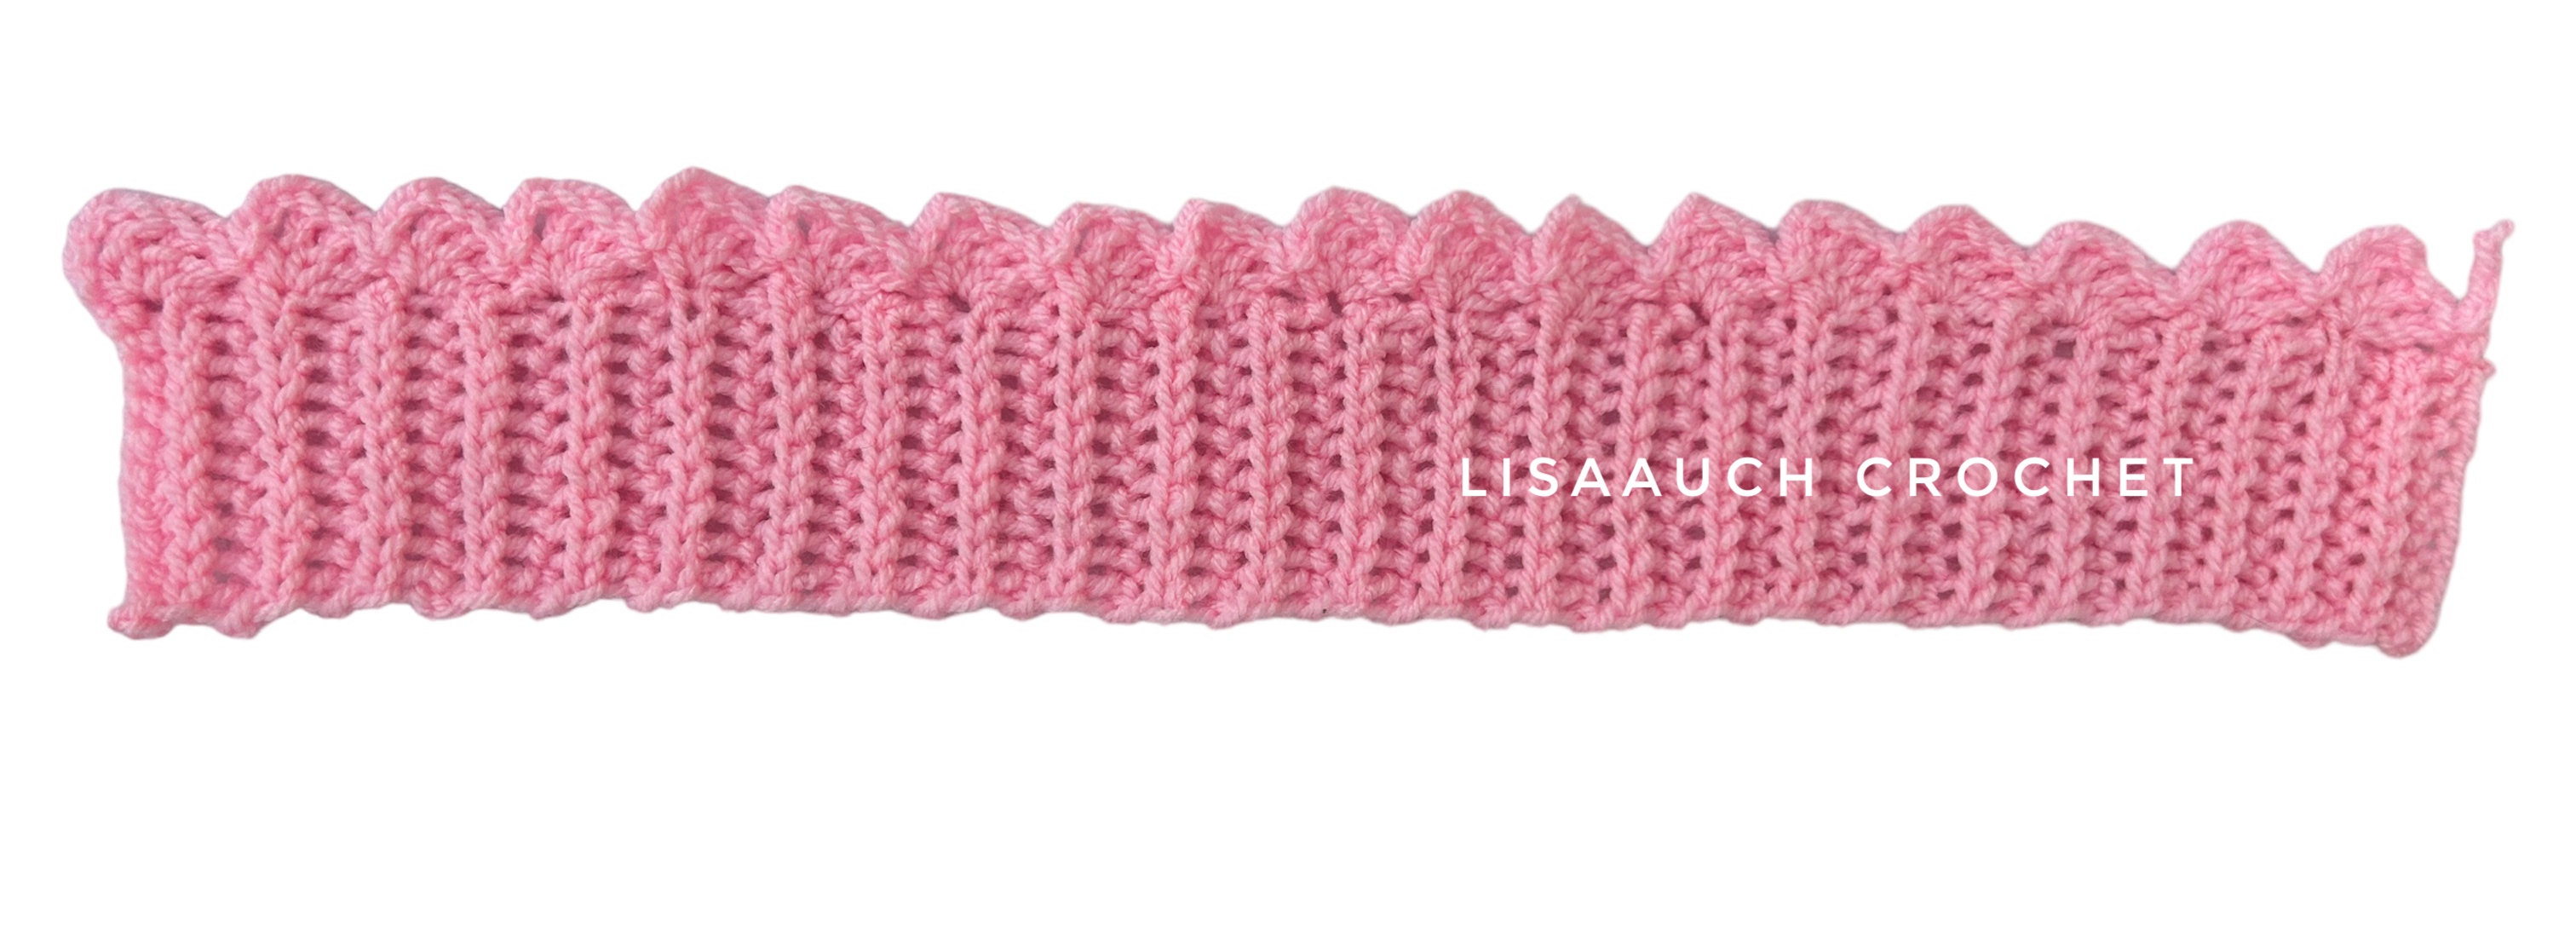 baby hat crochet pattern FREE